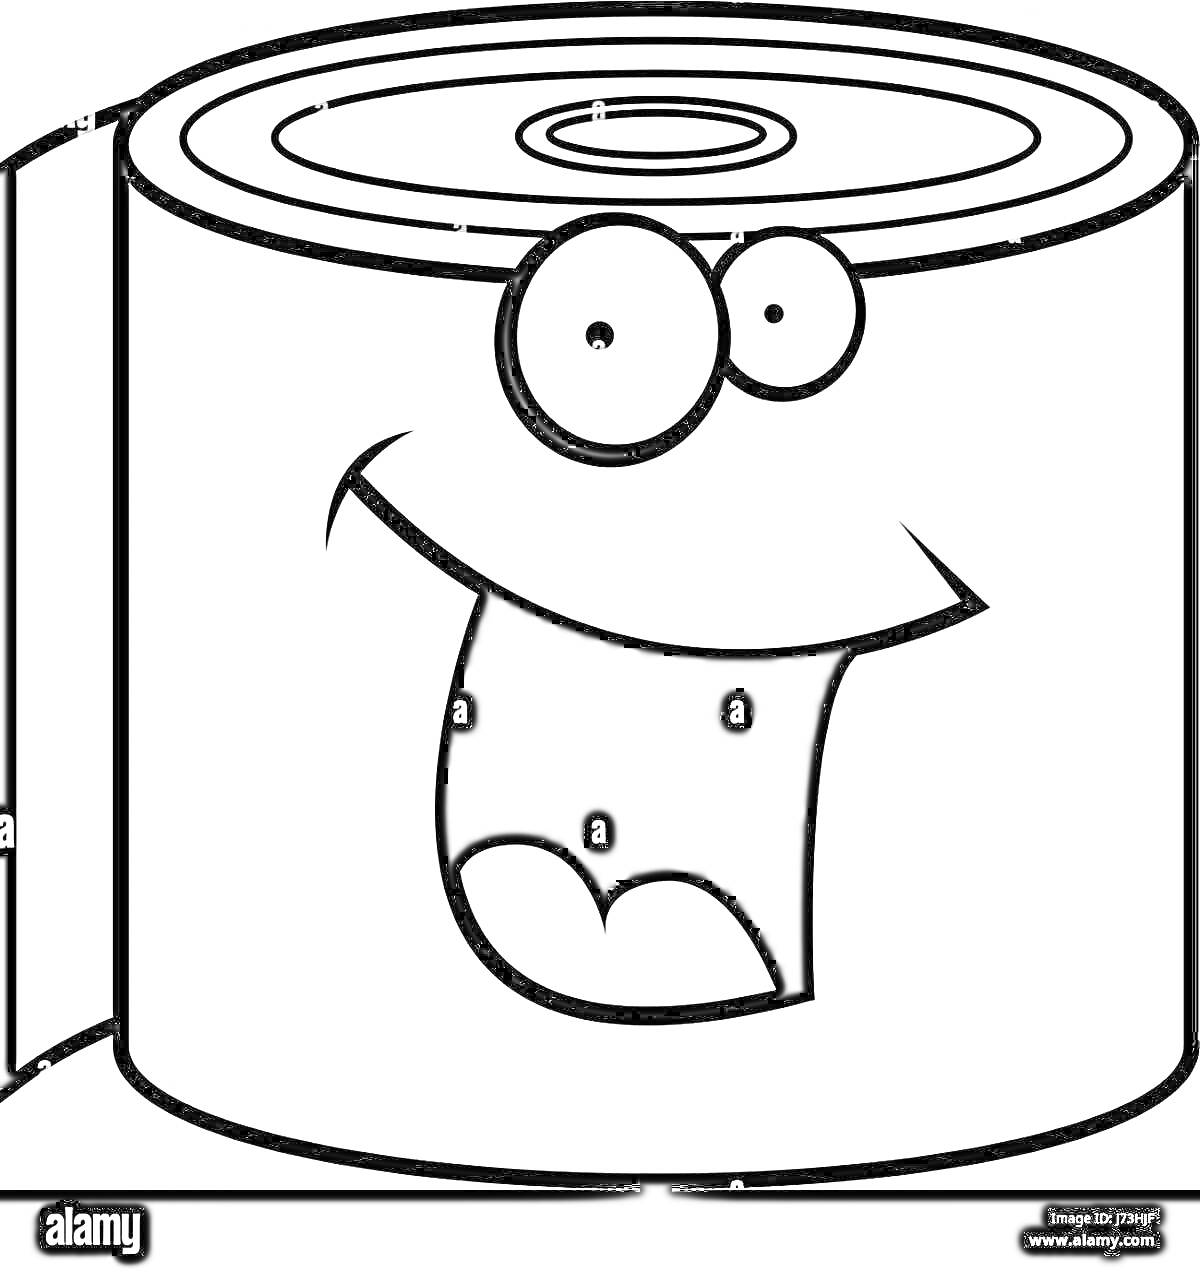 Раскраска Рулон туалетной бумаги с весёлым лицом